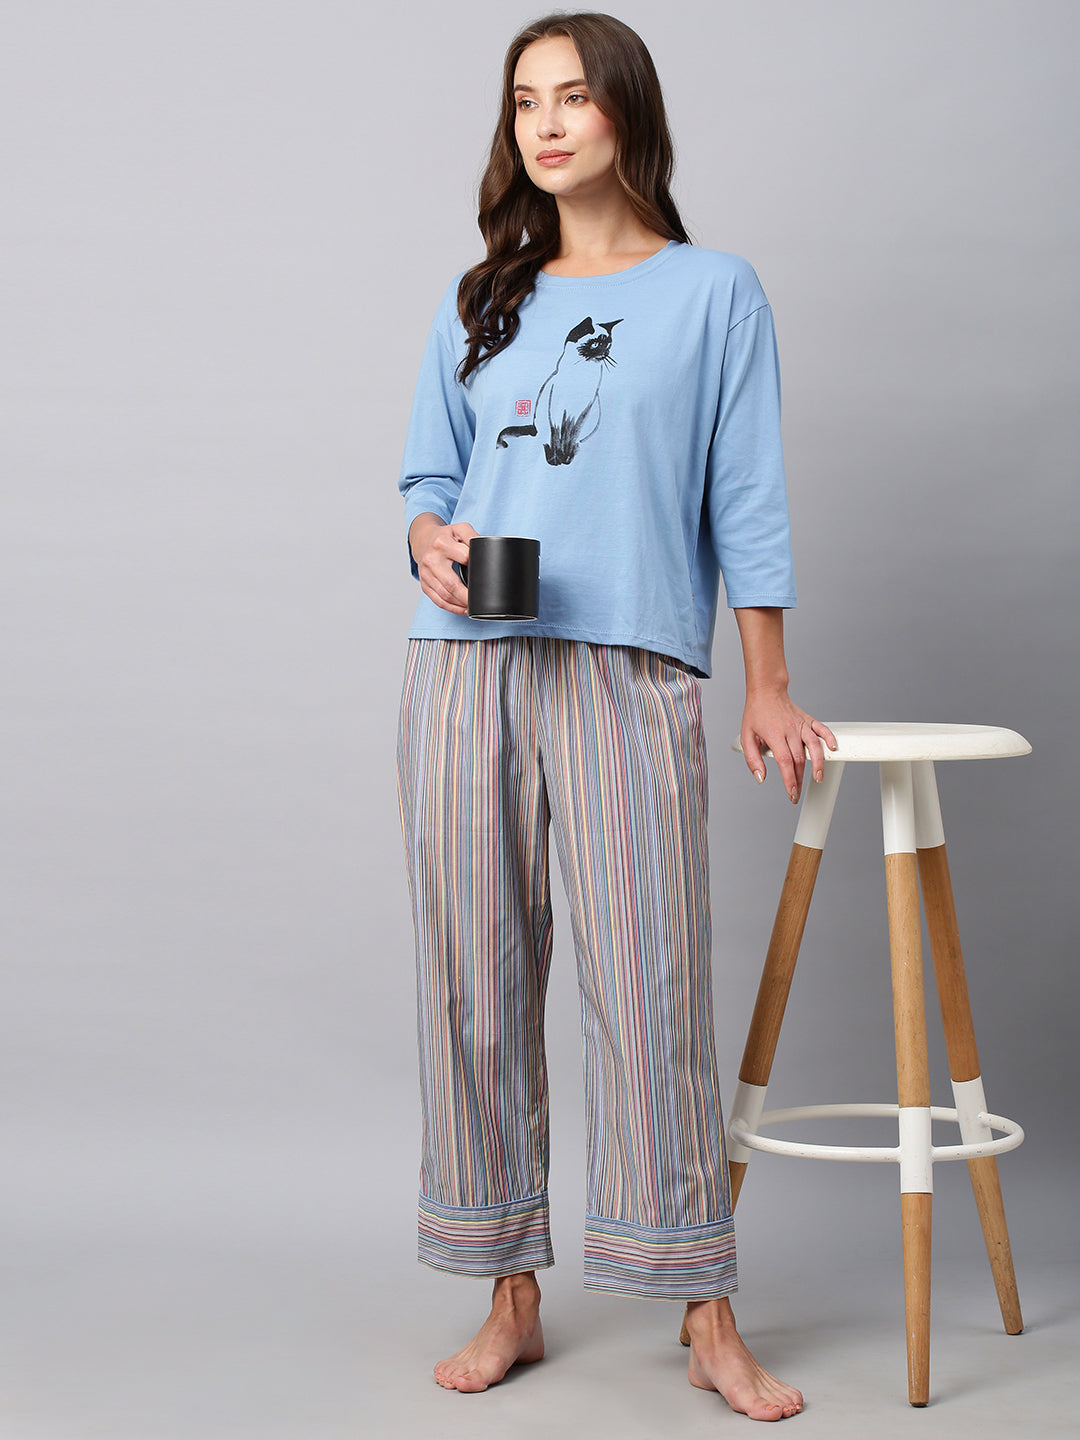 Cotton Jersey Tee W/ Multi Striped Pyjamas